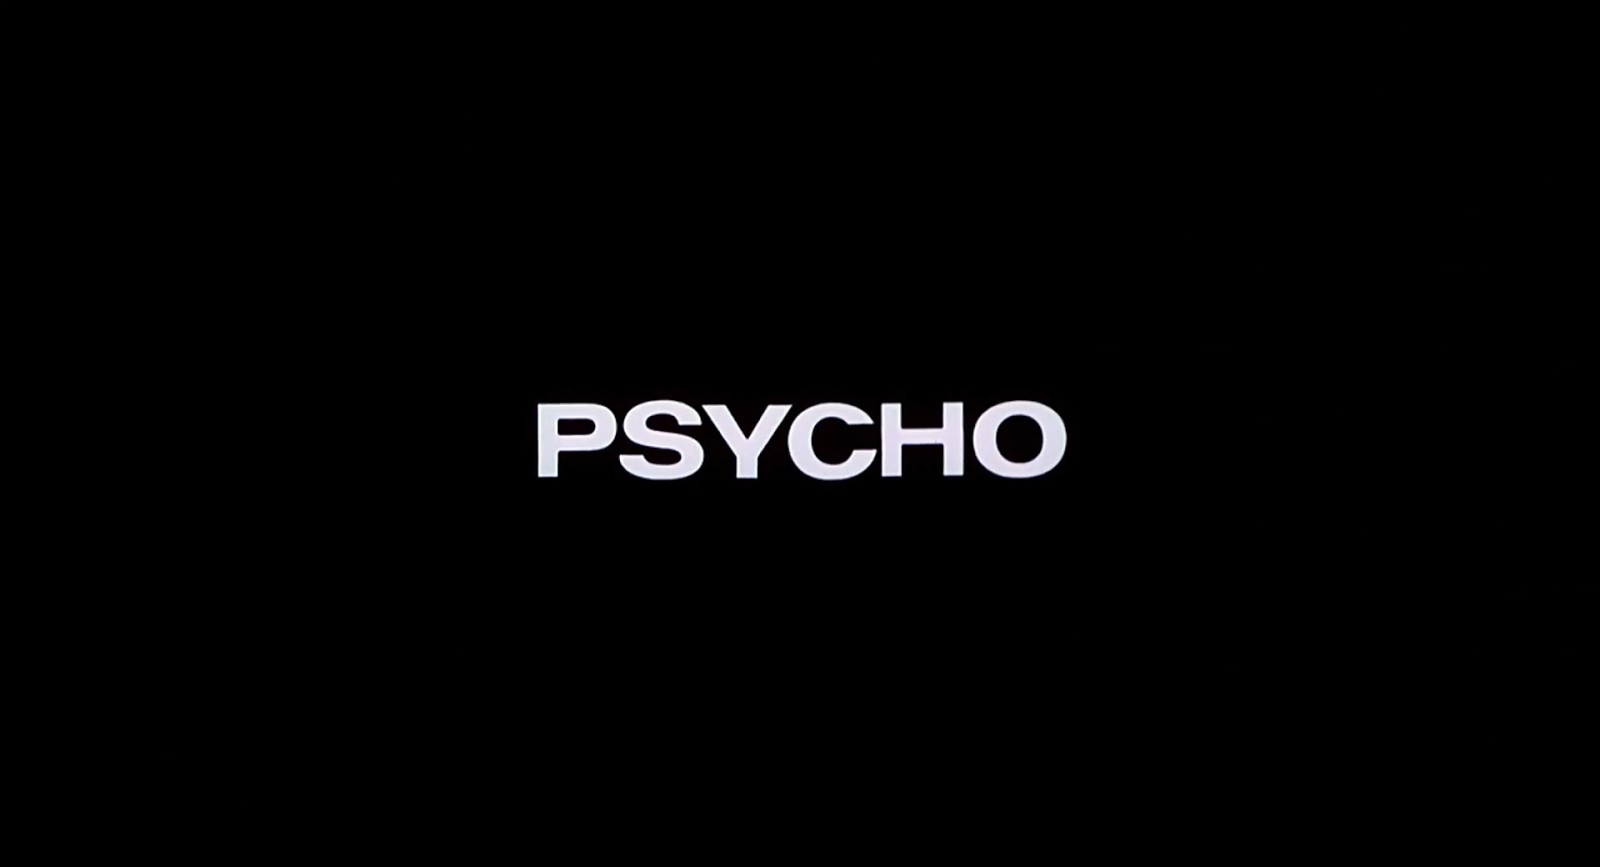 Psicosis (Psycho)|La Colección |1080p|latino